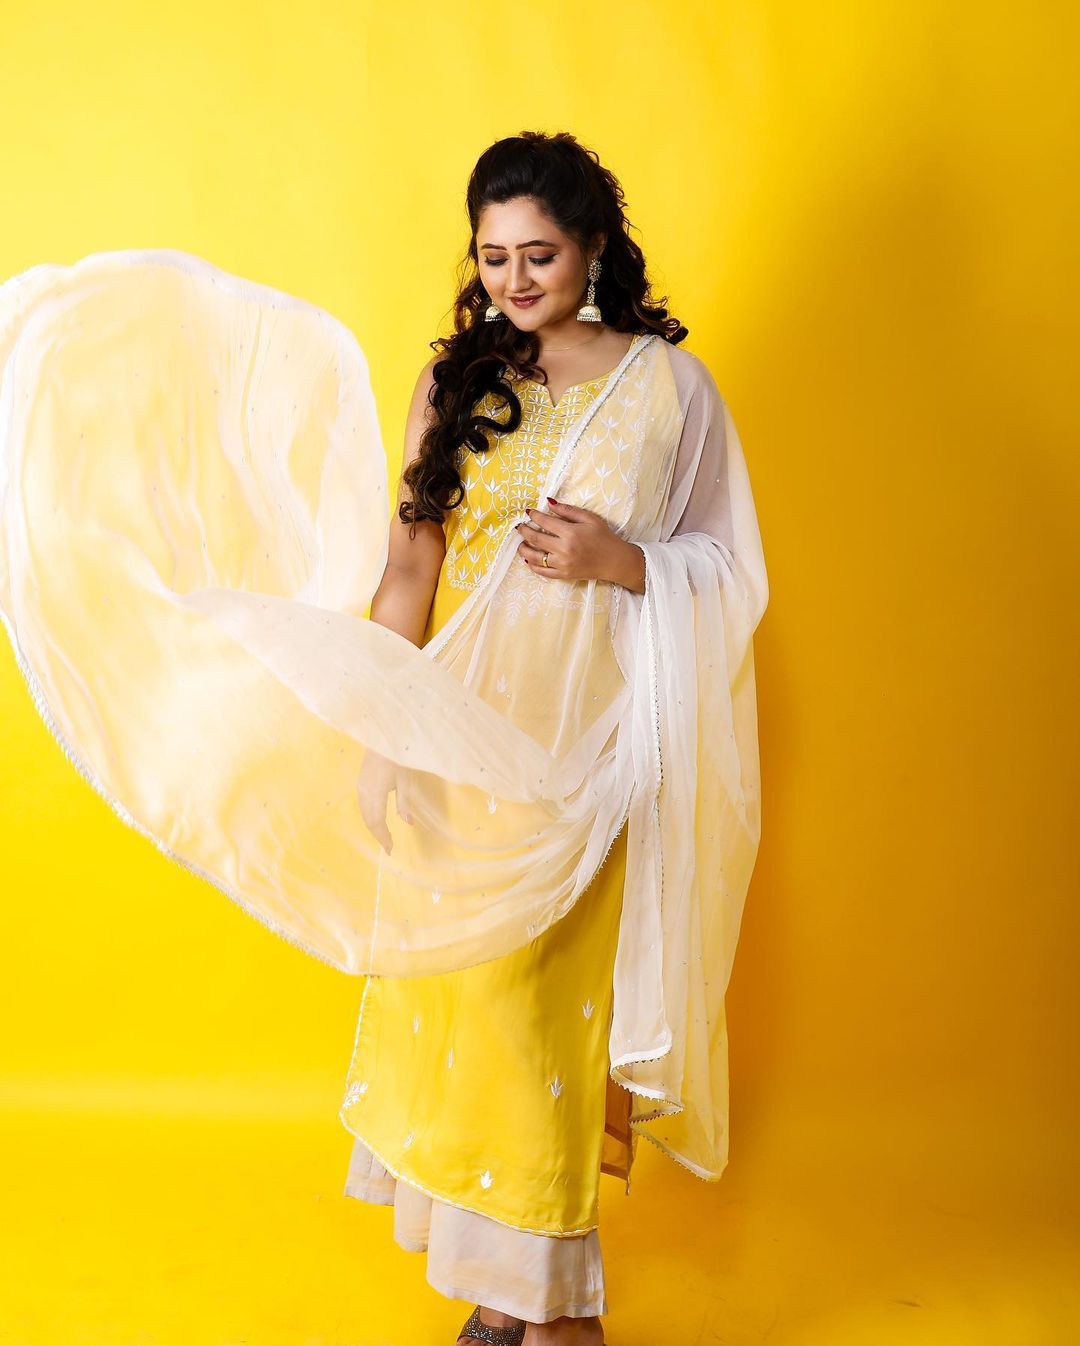 Selendang putih dalam balutan saree berwarna kuning membuat penampilannya terlihat menyegarkan.